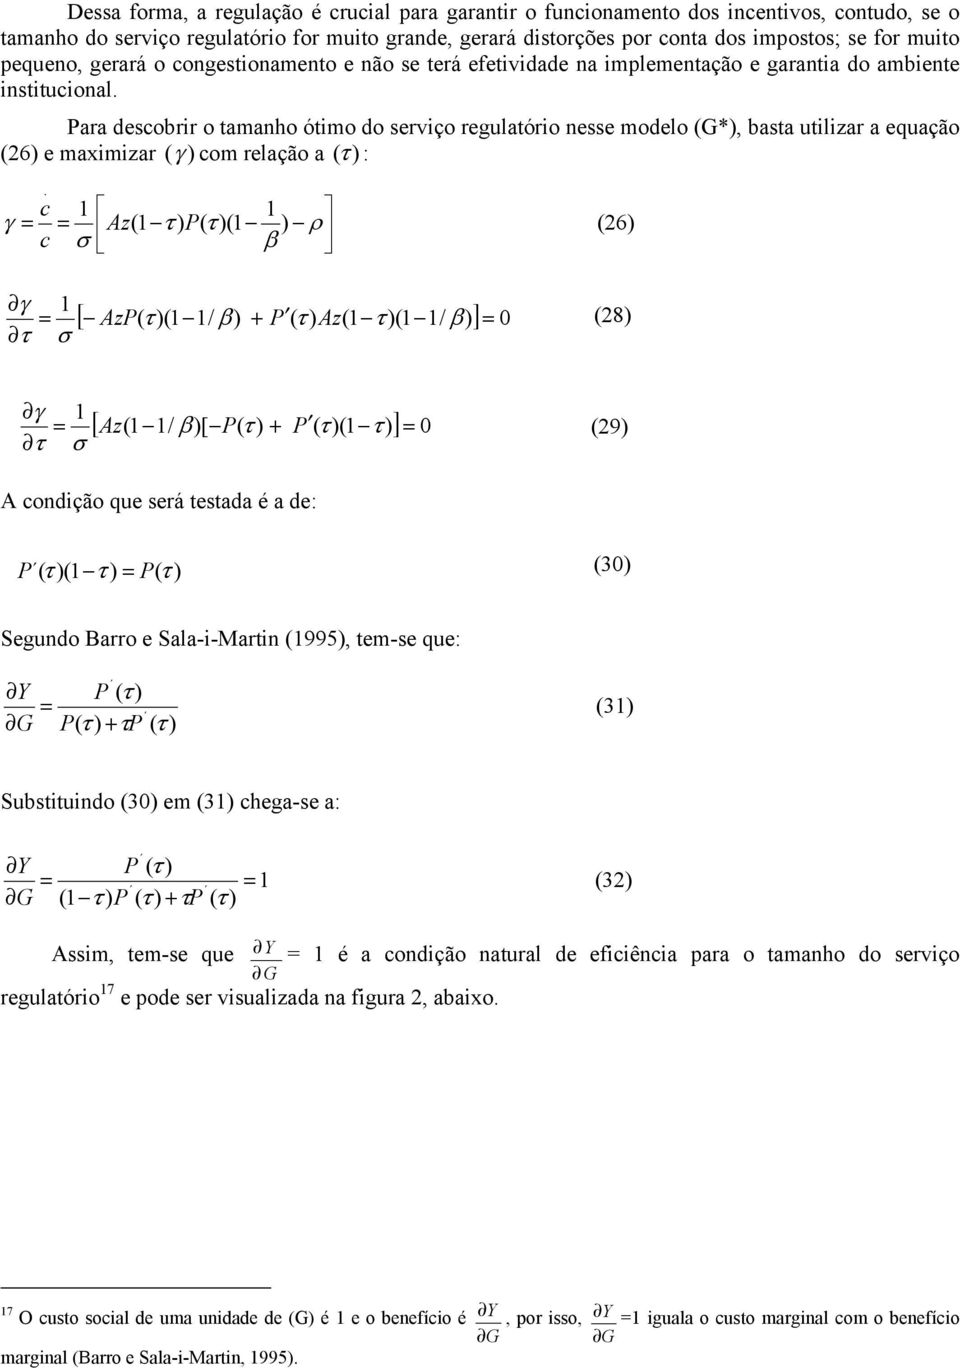 Para descobrr o amanho ómo do servço regulaóro nesse modelo (G*), basa ulzar a equação (26) e maxmzar (γ ) com relação a (τ ) :.